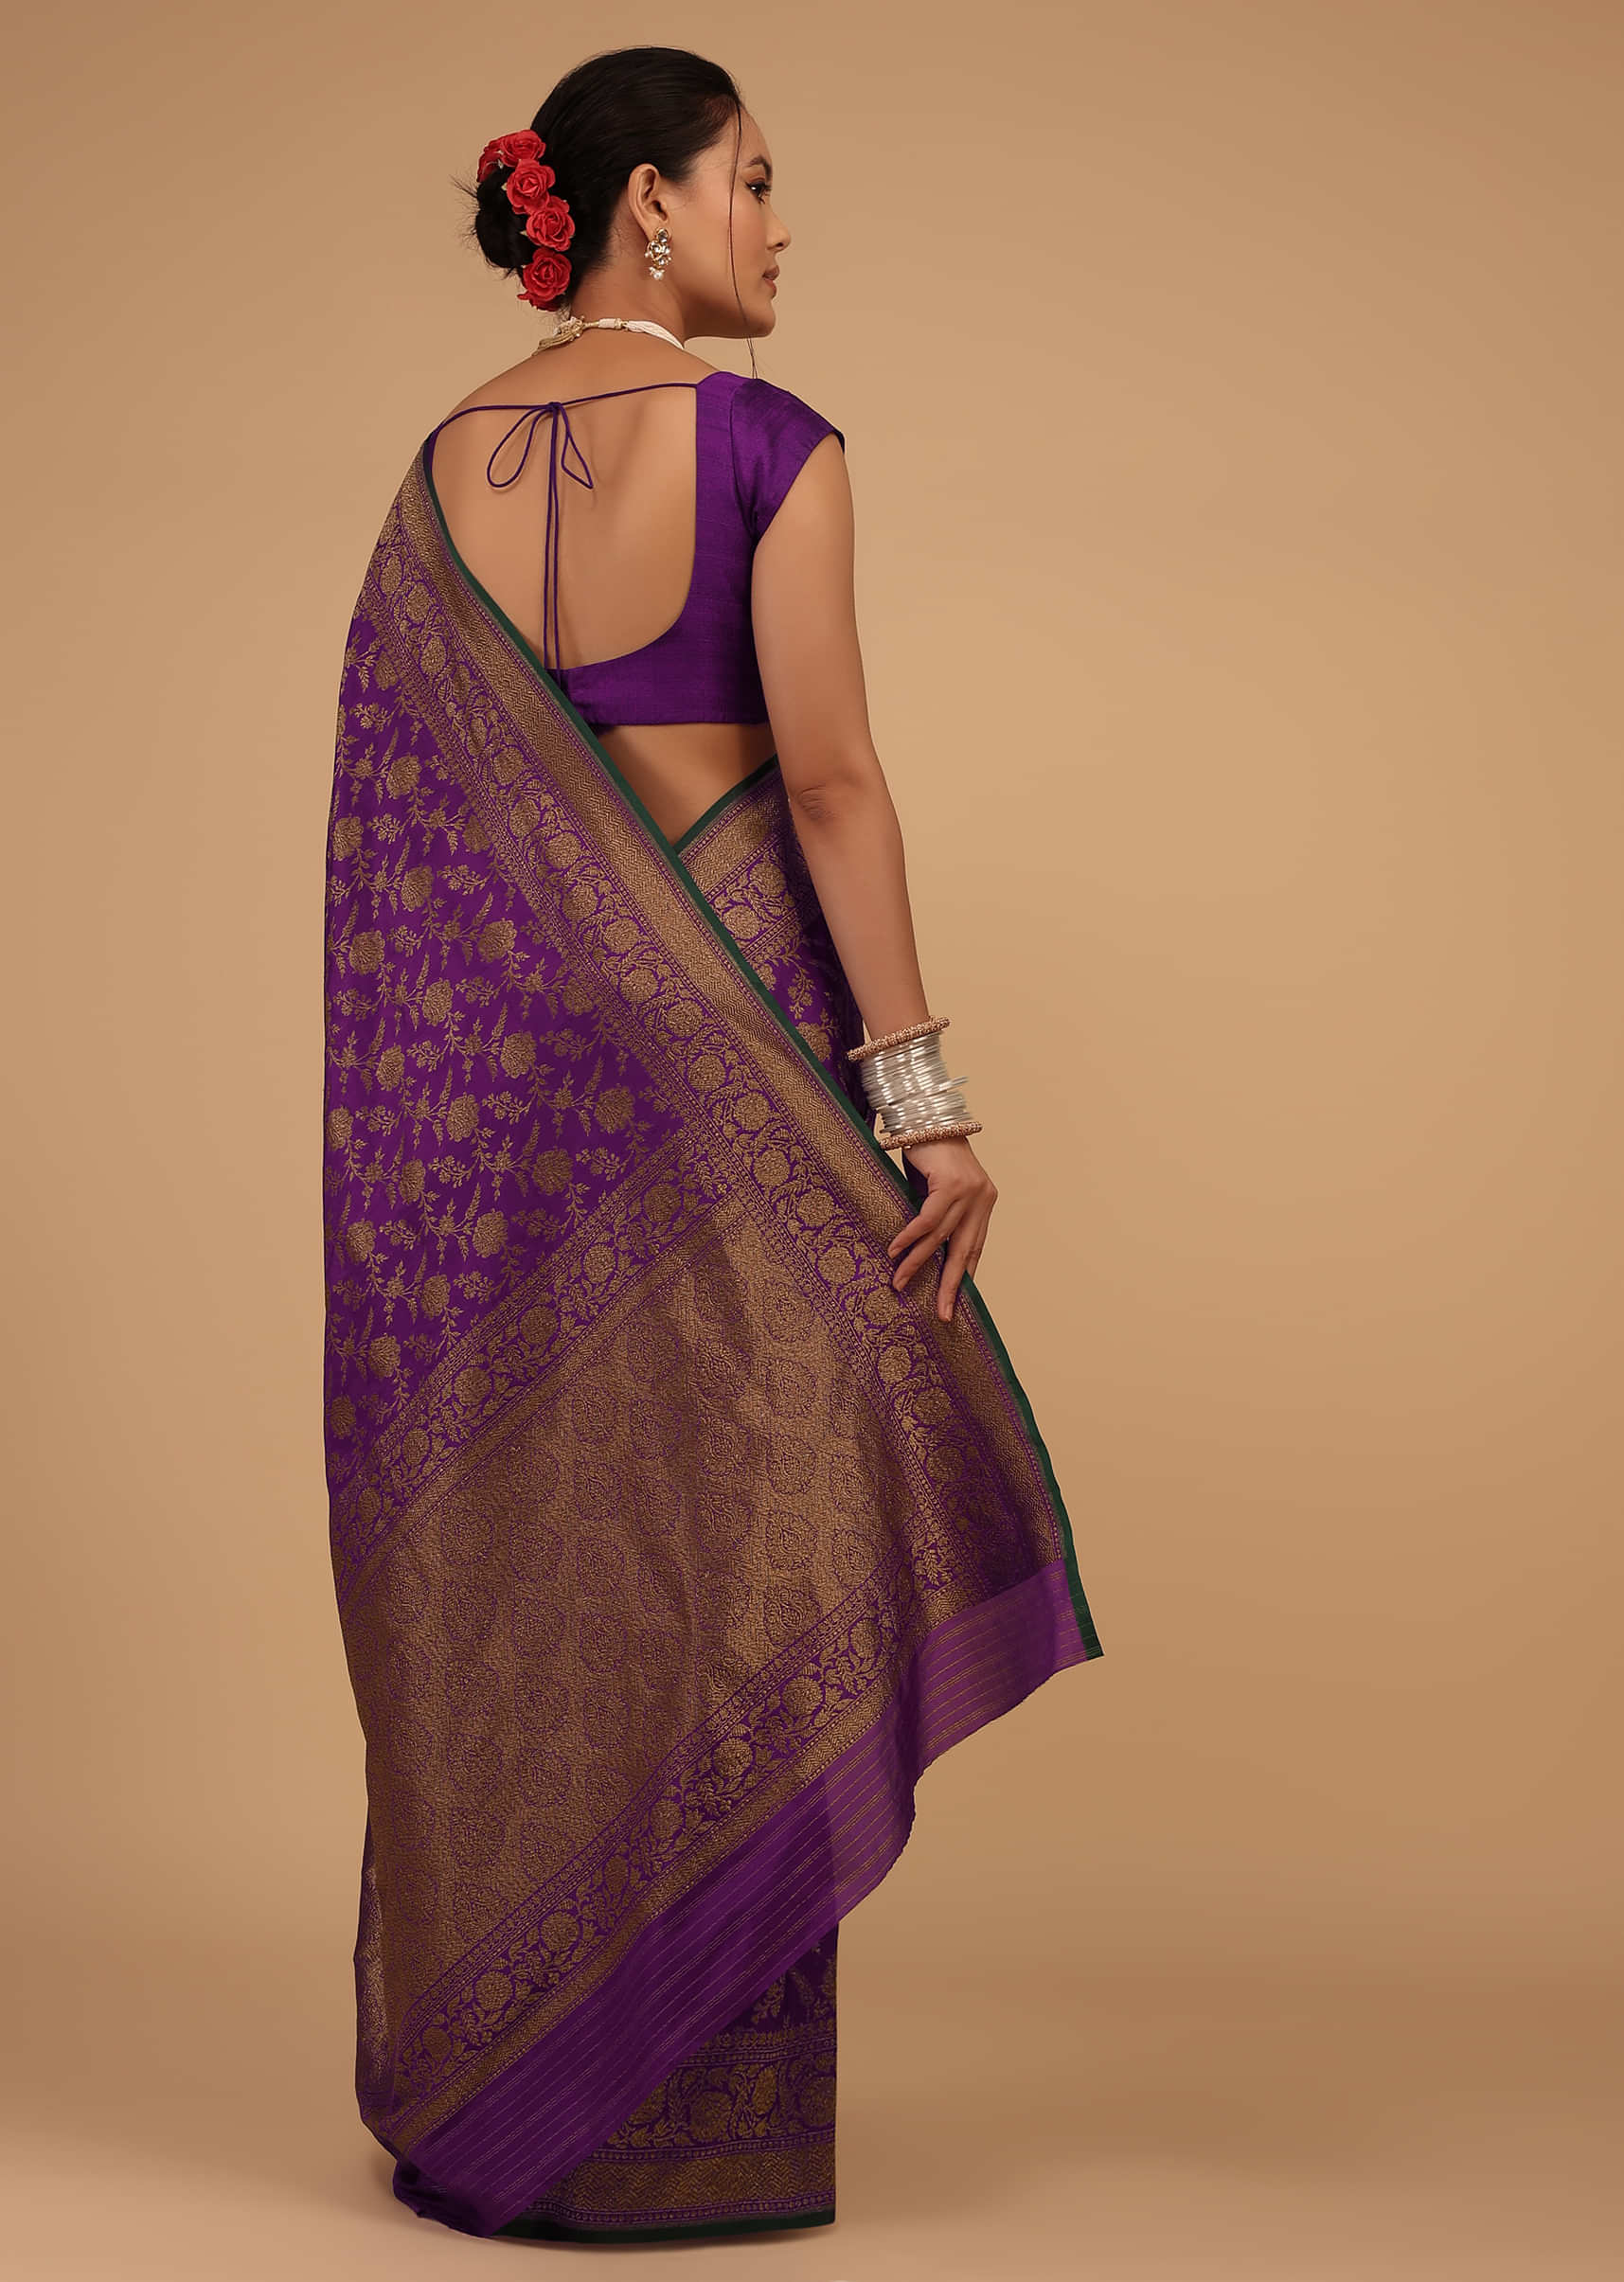 Grape Purple Saree In Pure Banarasi Silk With Upada Zari Weave In Floral Jaal Work